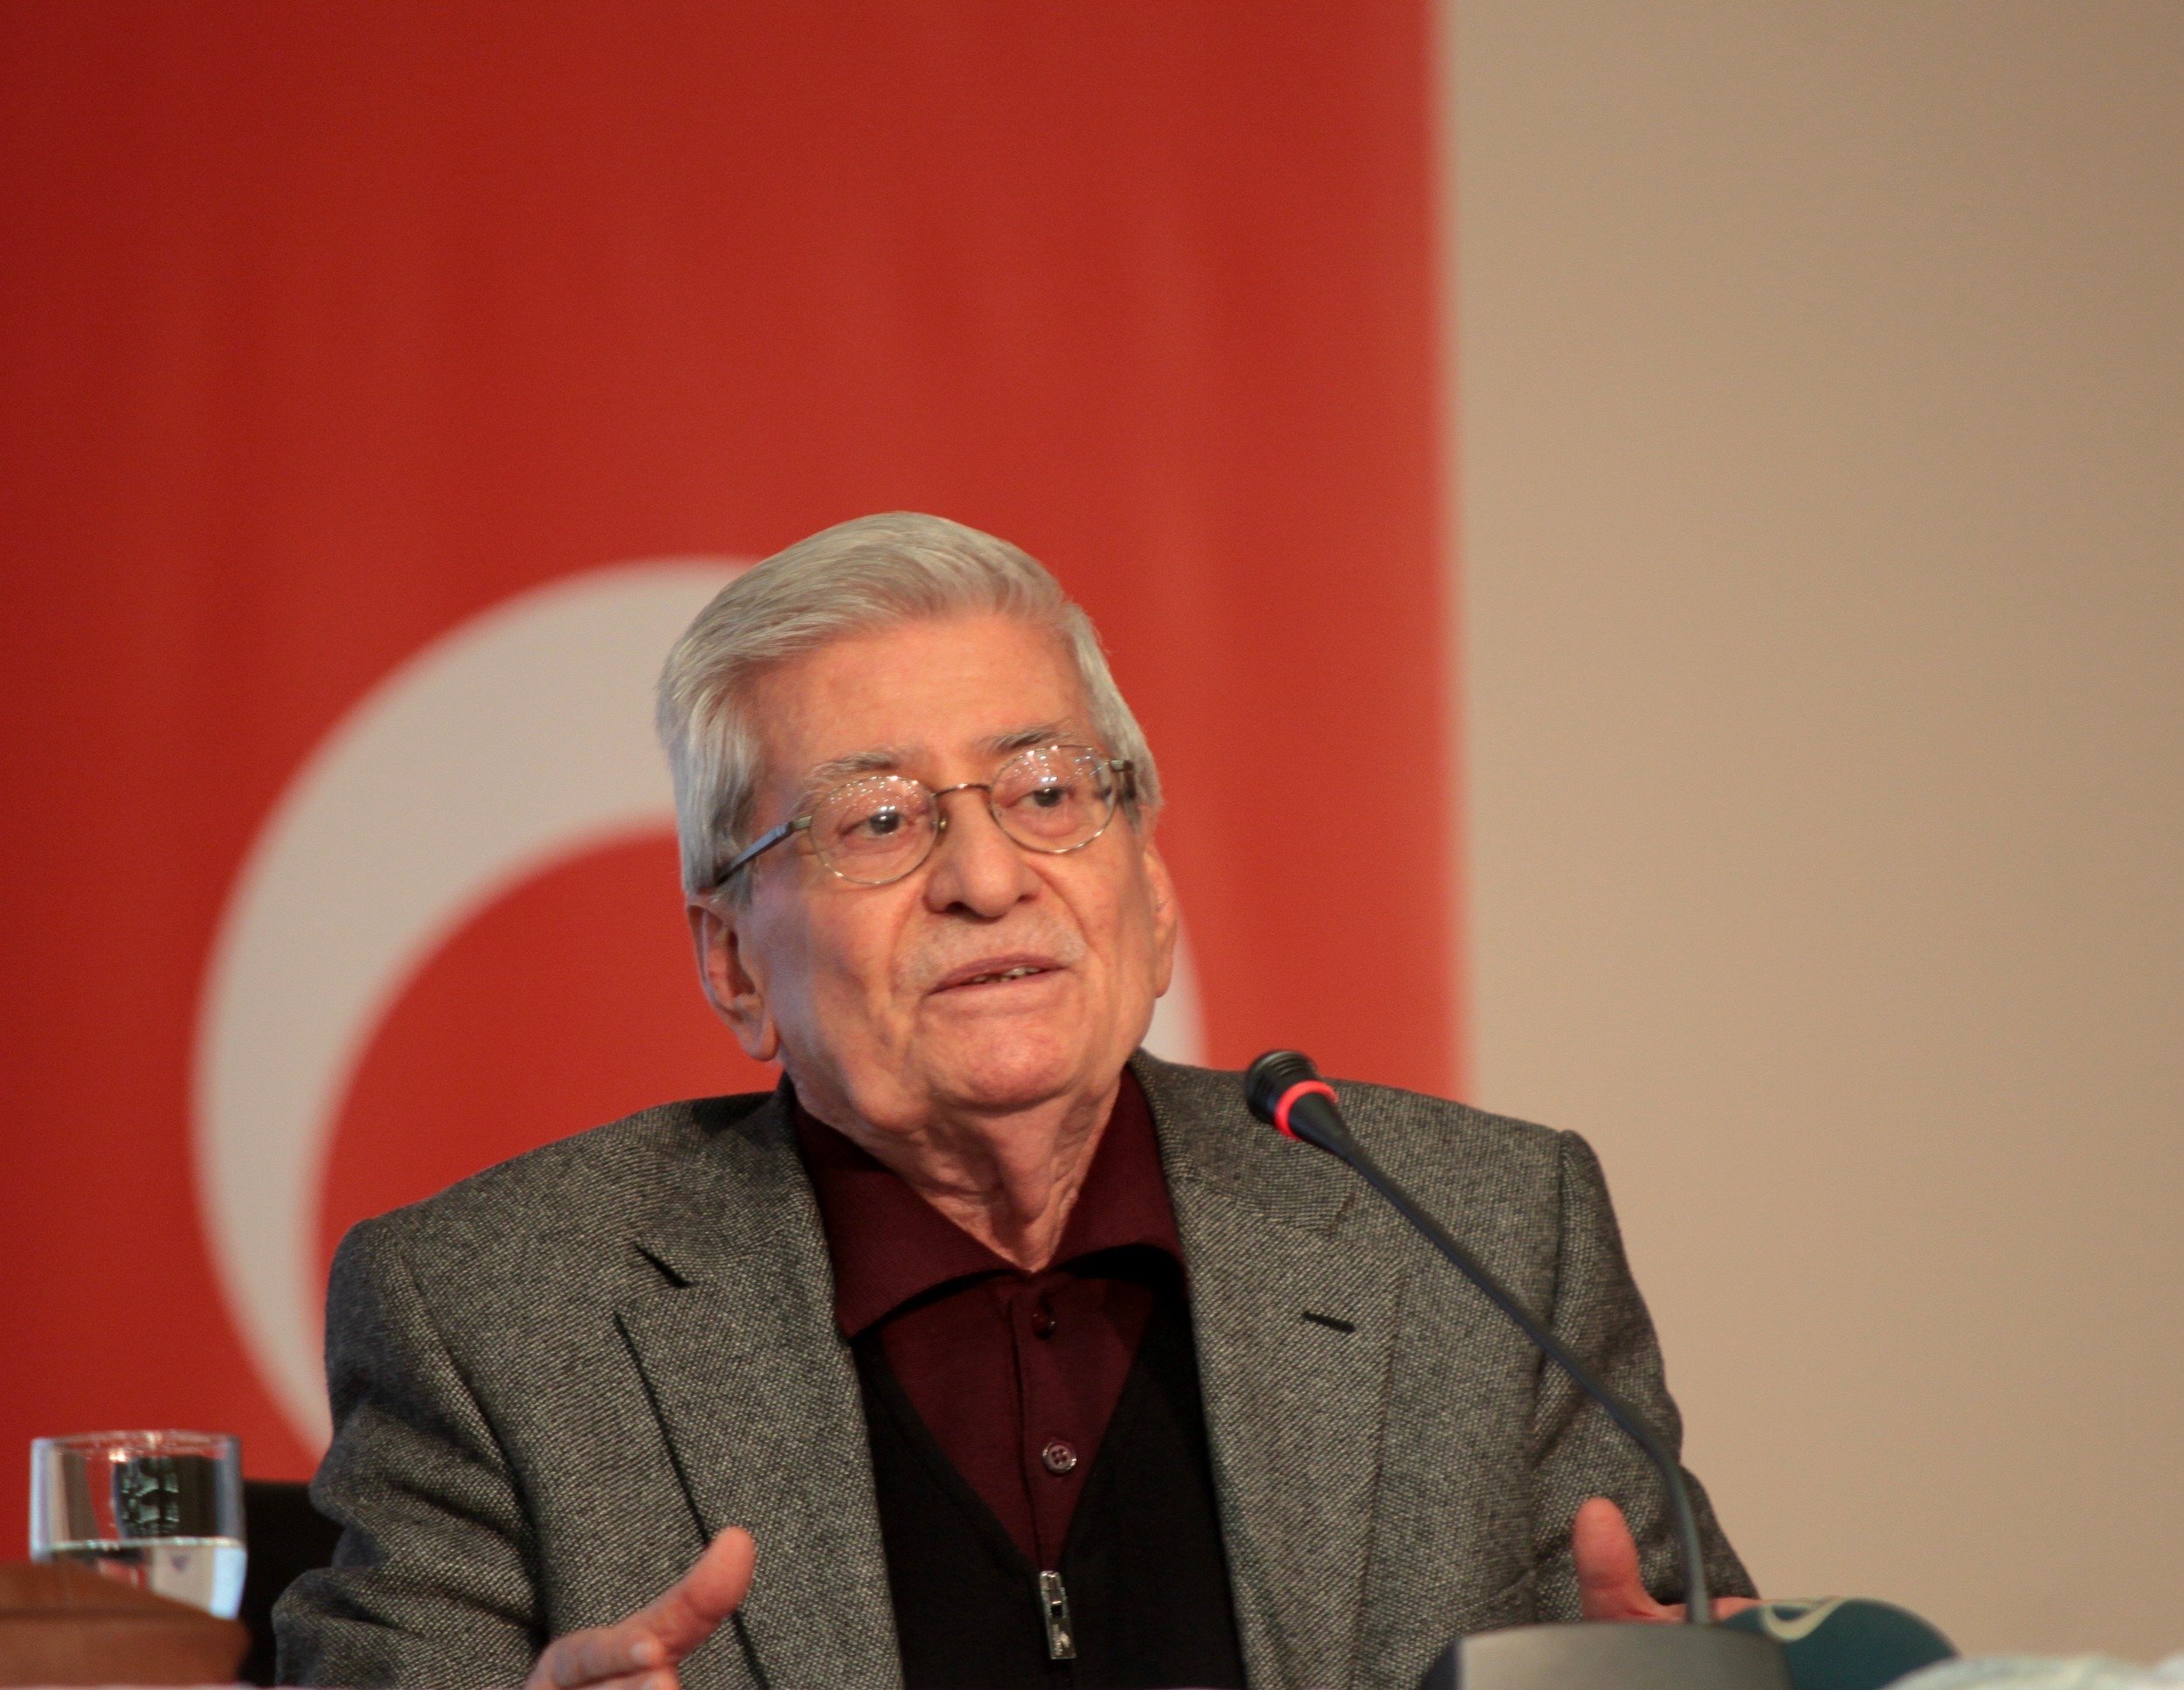 Rasim zdenören, yang dirawat di Ankara selama beberapa waktu karena komplikasi kesehatan, meninggal dunia pada usia 82 tahun. (AA Photo)